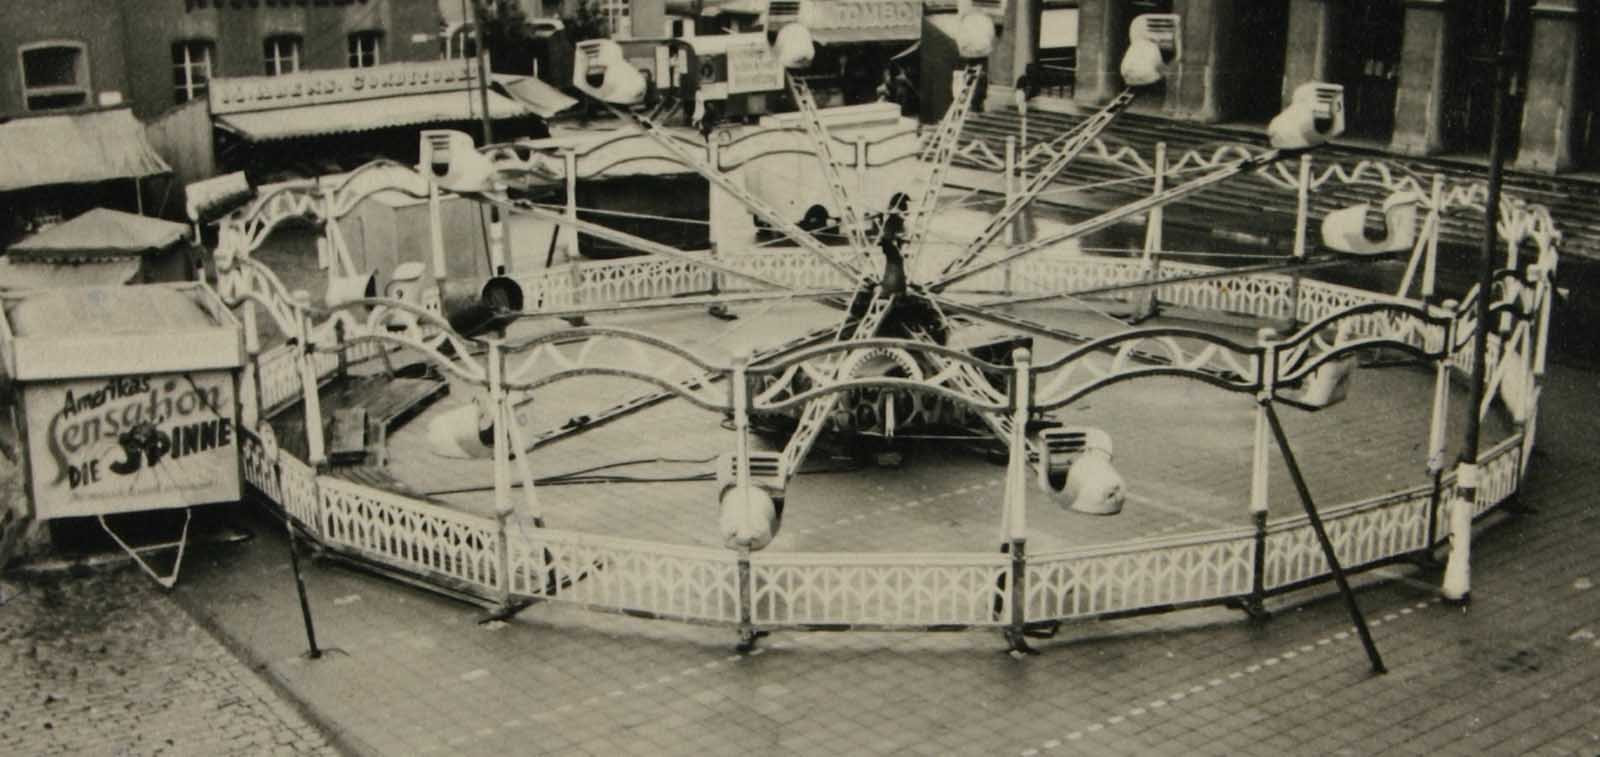 Petters Spinne gehörte früher zu den beliebtesten Karussells auf den Werner Kirmessen. Archivfoto: Sim-Jü-Verlag